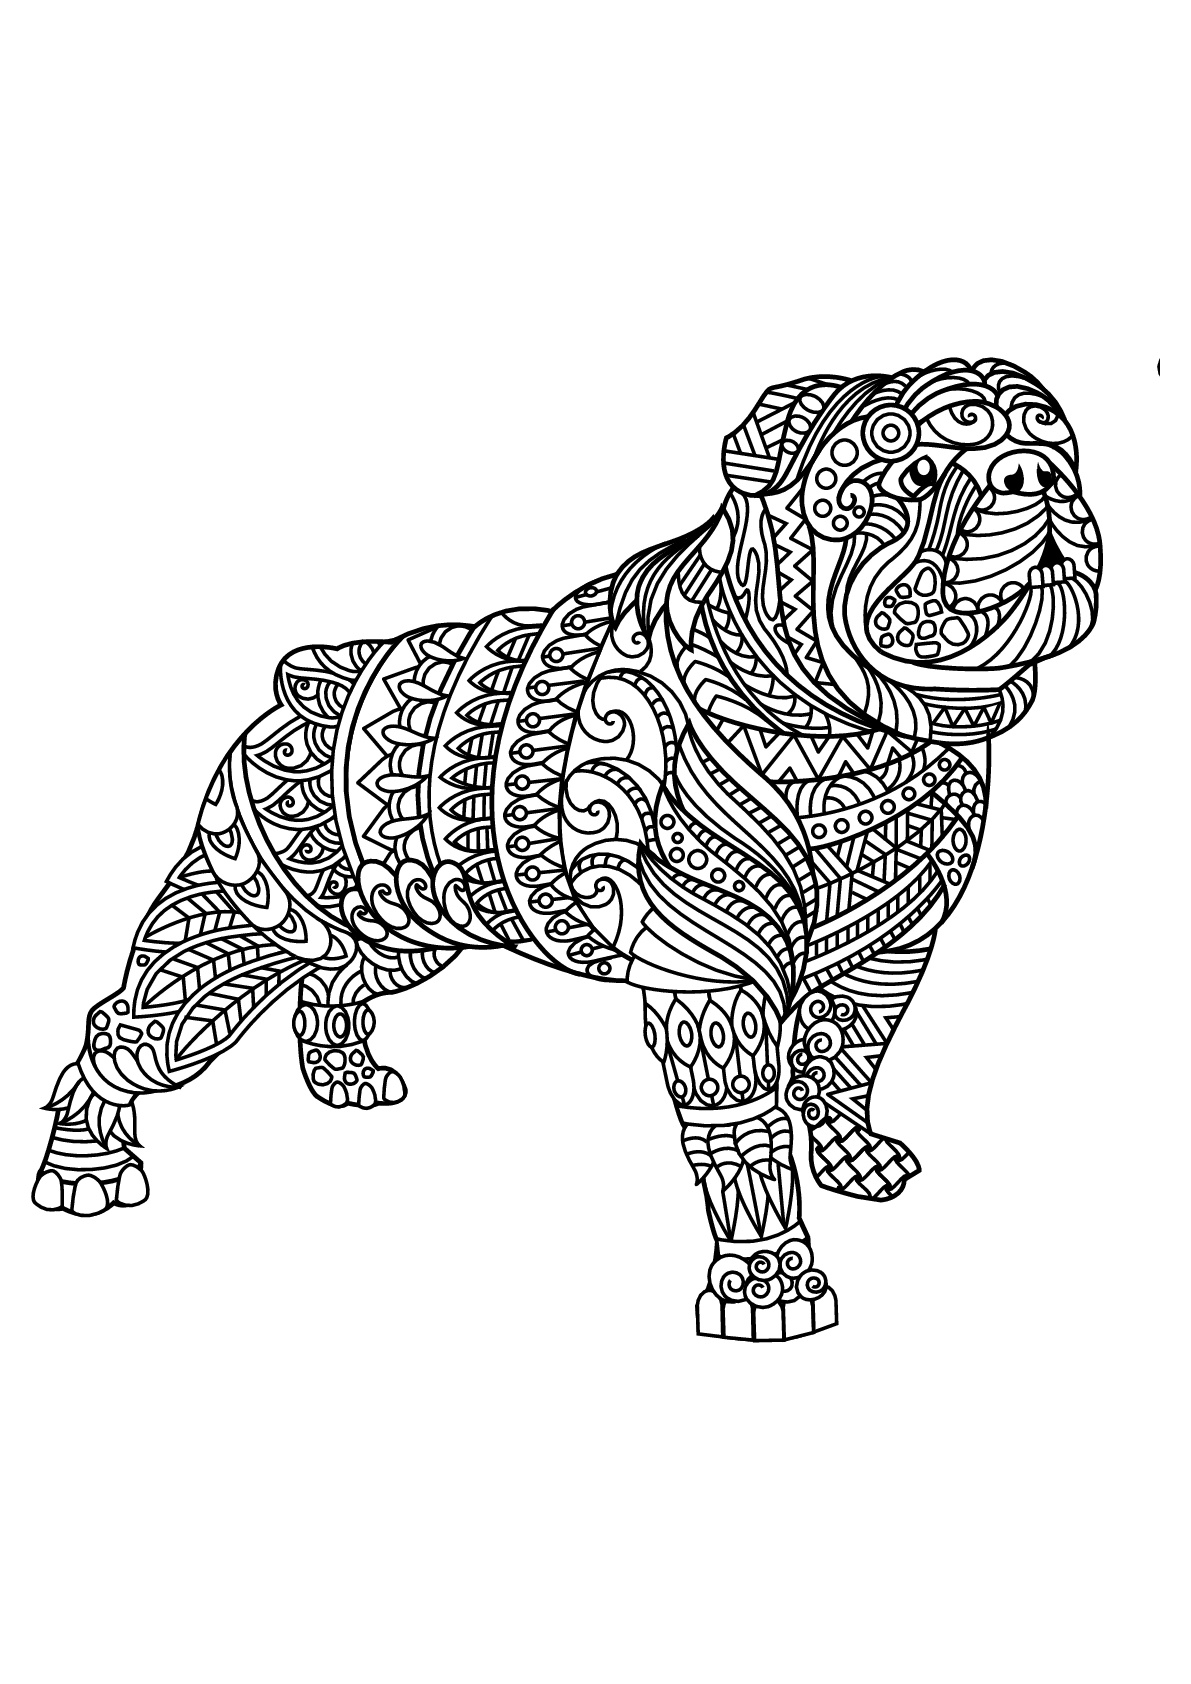 Bulldog, avec motifs harmonieux et complexes